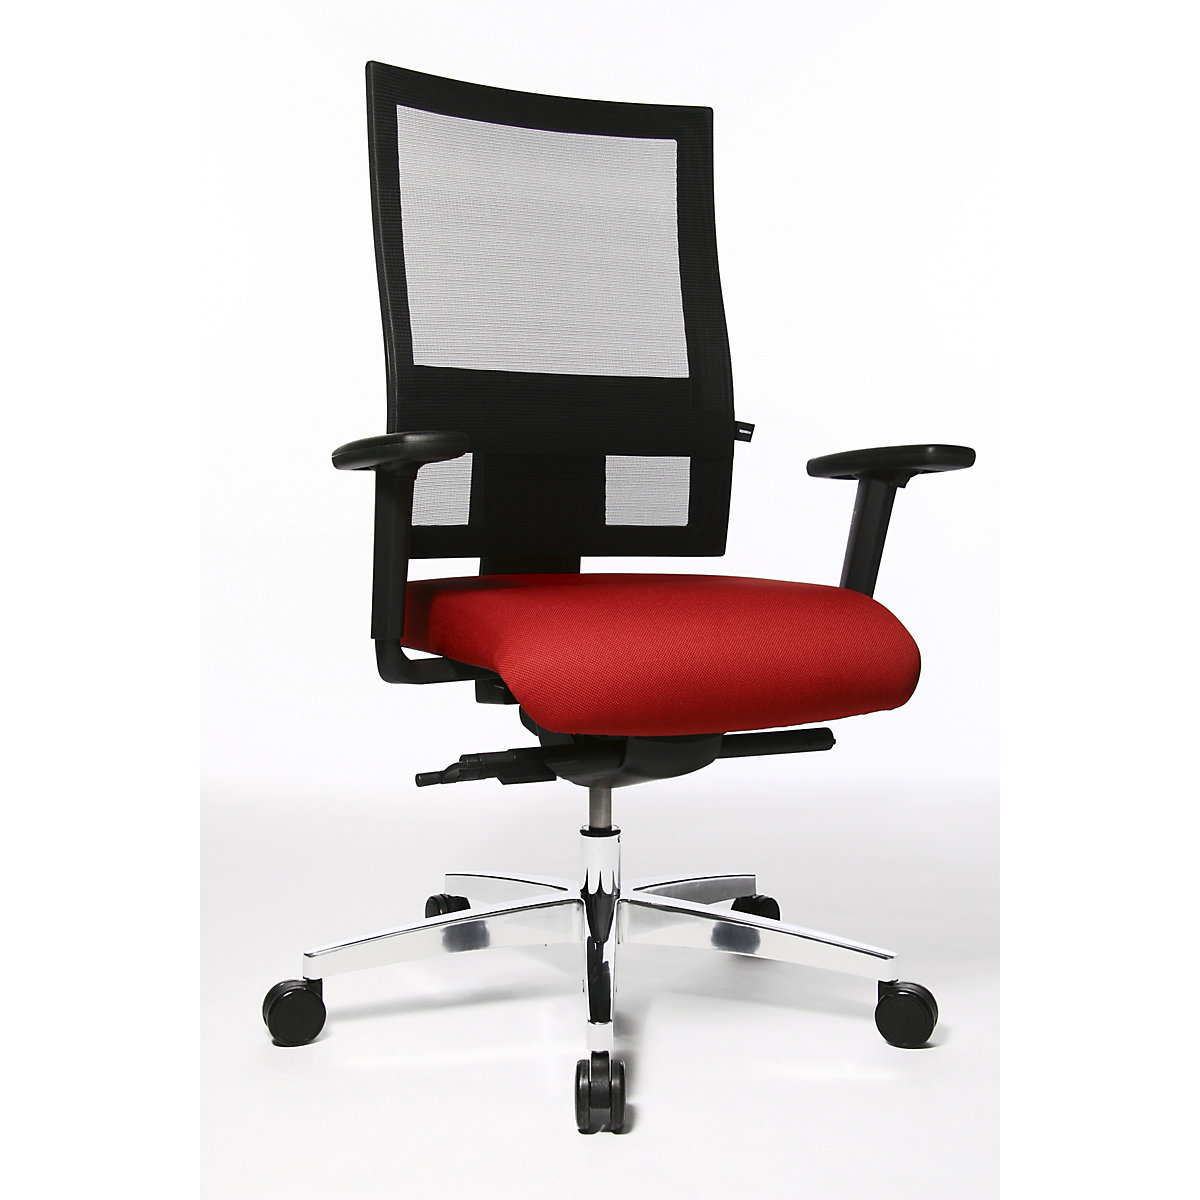 Sedia girevole per ufficio PROFI NET 11 – Topstar, braccioli regolabili in altezza con piano d'appoggio morbido, rosso-3